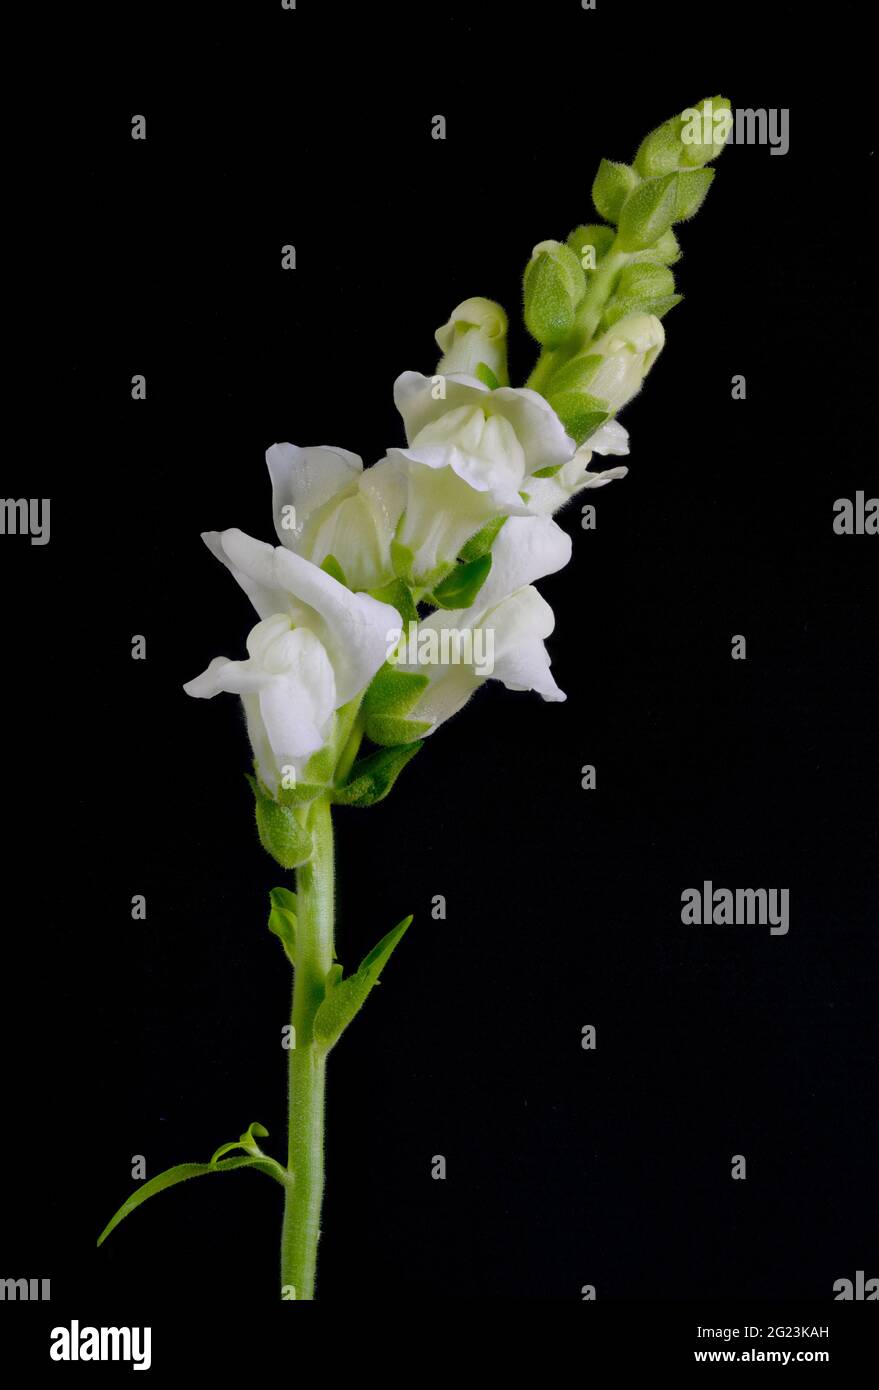 Élégantes fleurs blanches d'un Snapdragon, (espèce d'Antirrhinum), photographiées sur fond sombre Banque D'Images